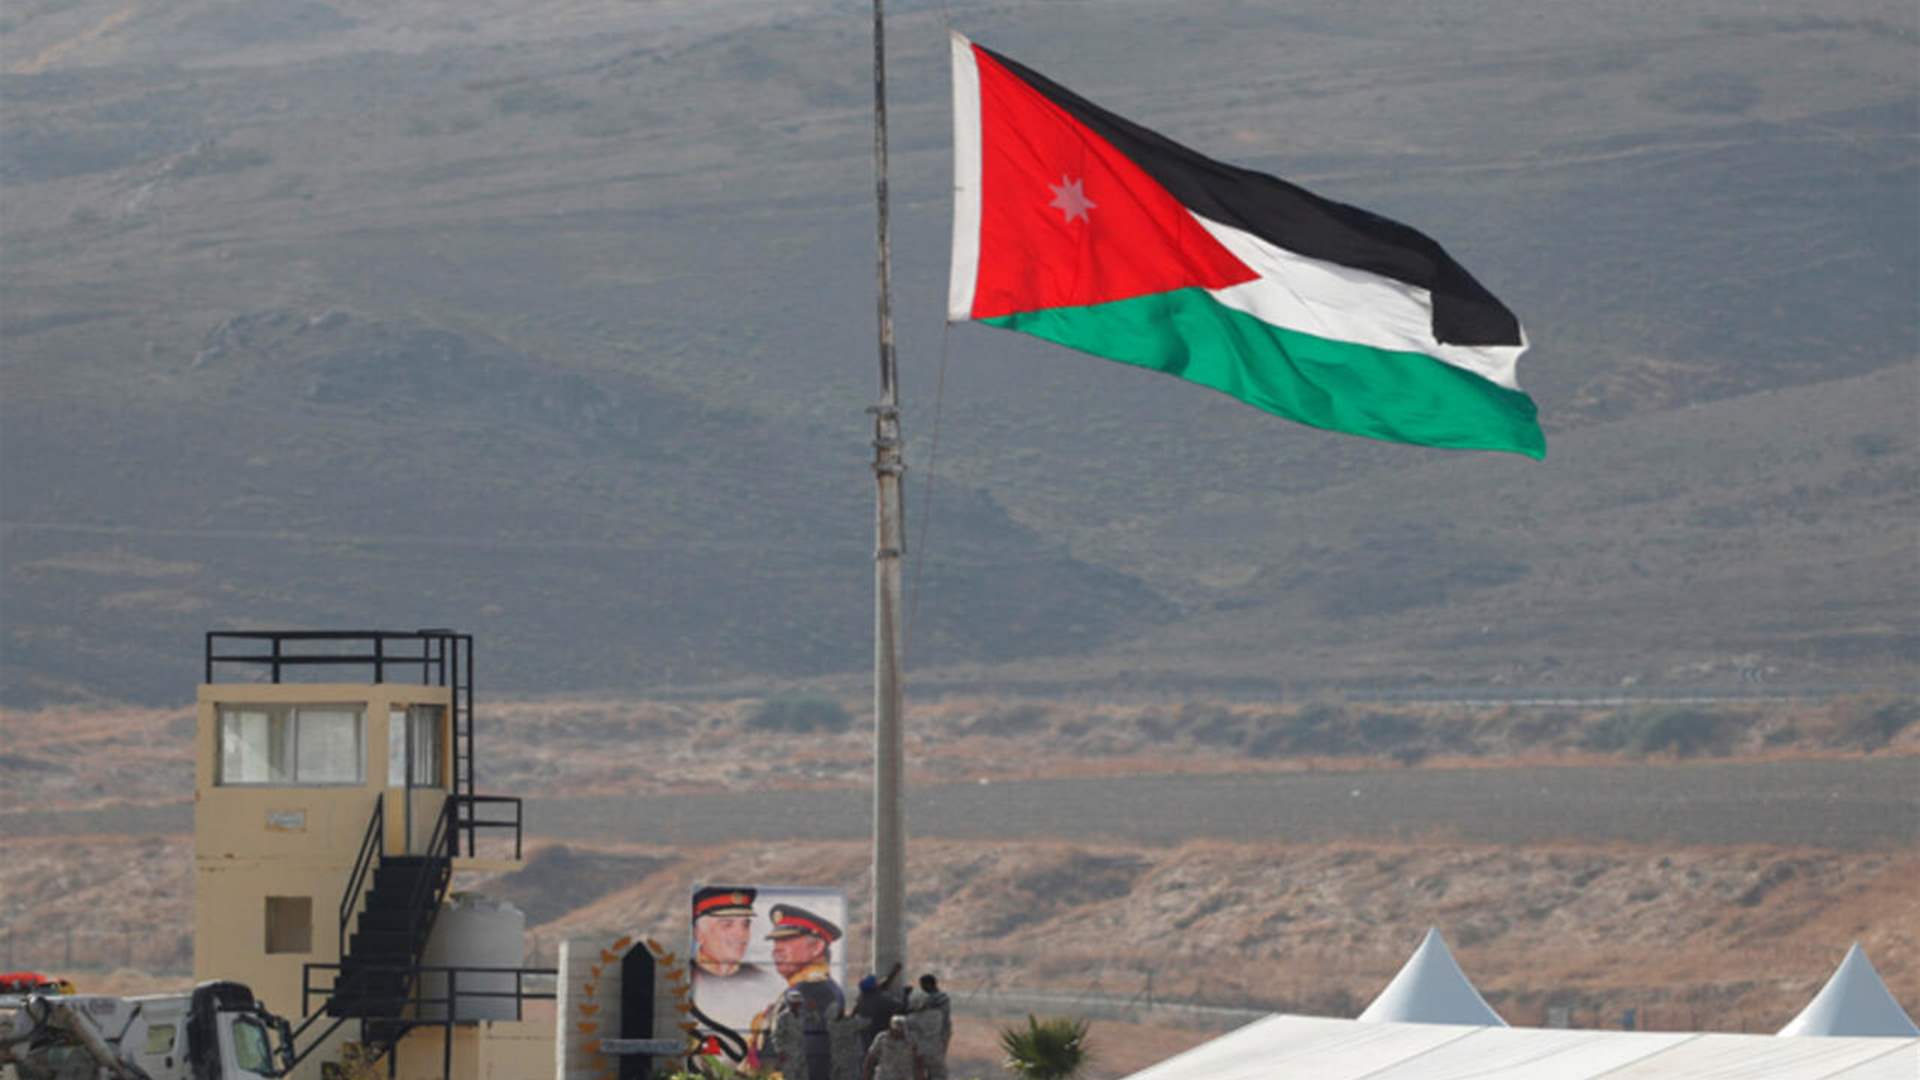 الأردن يلقي القبض على 4 إسرائيليين لفترة وجيزة بعد اجتياز الحدود بالخطأ